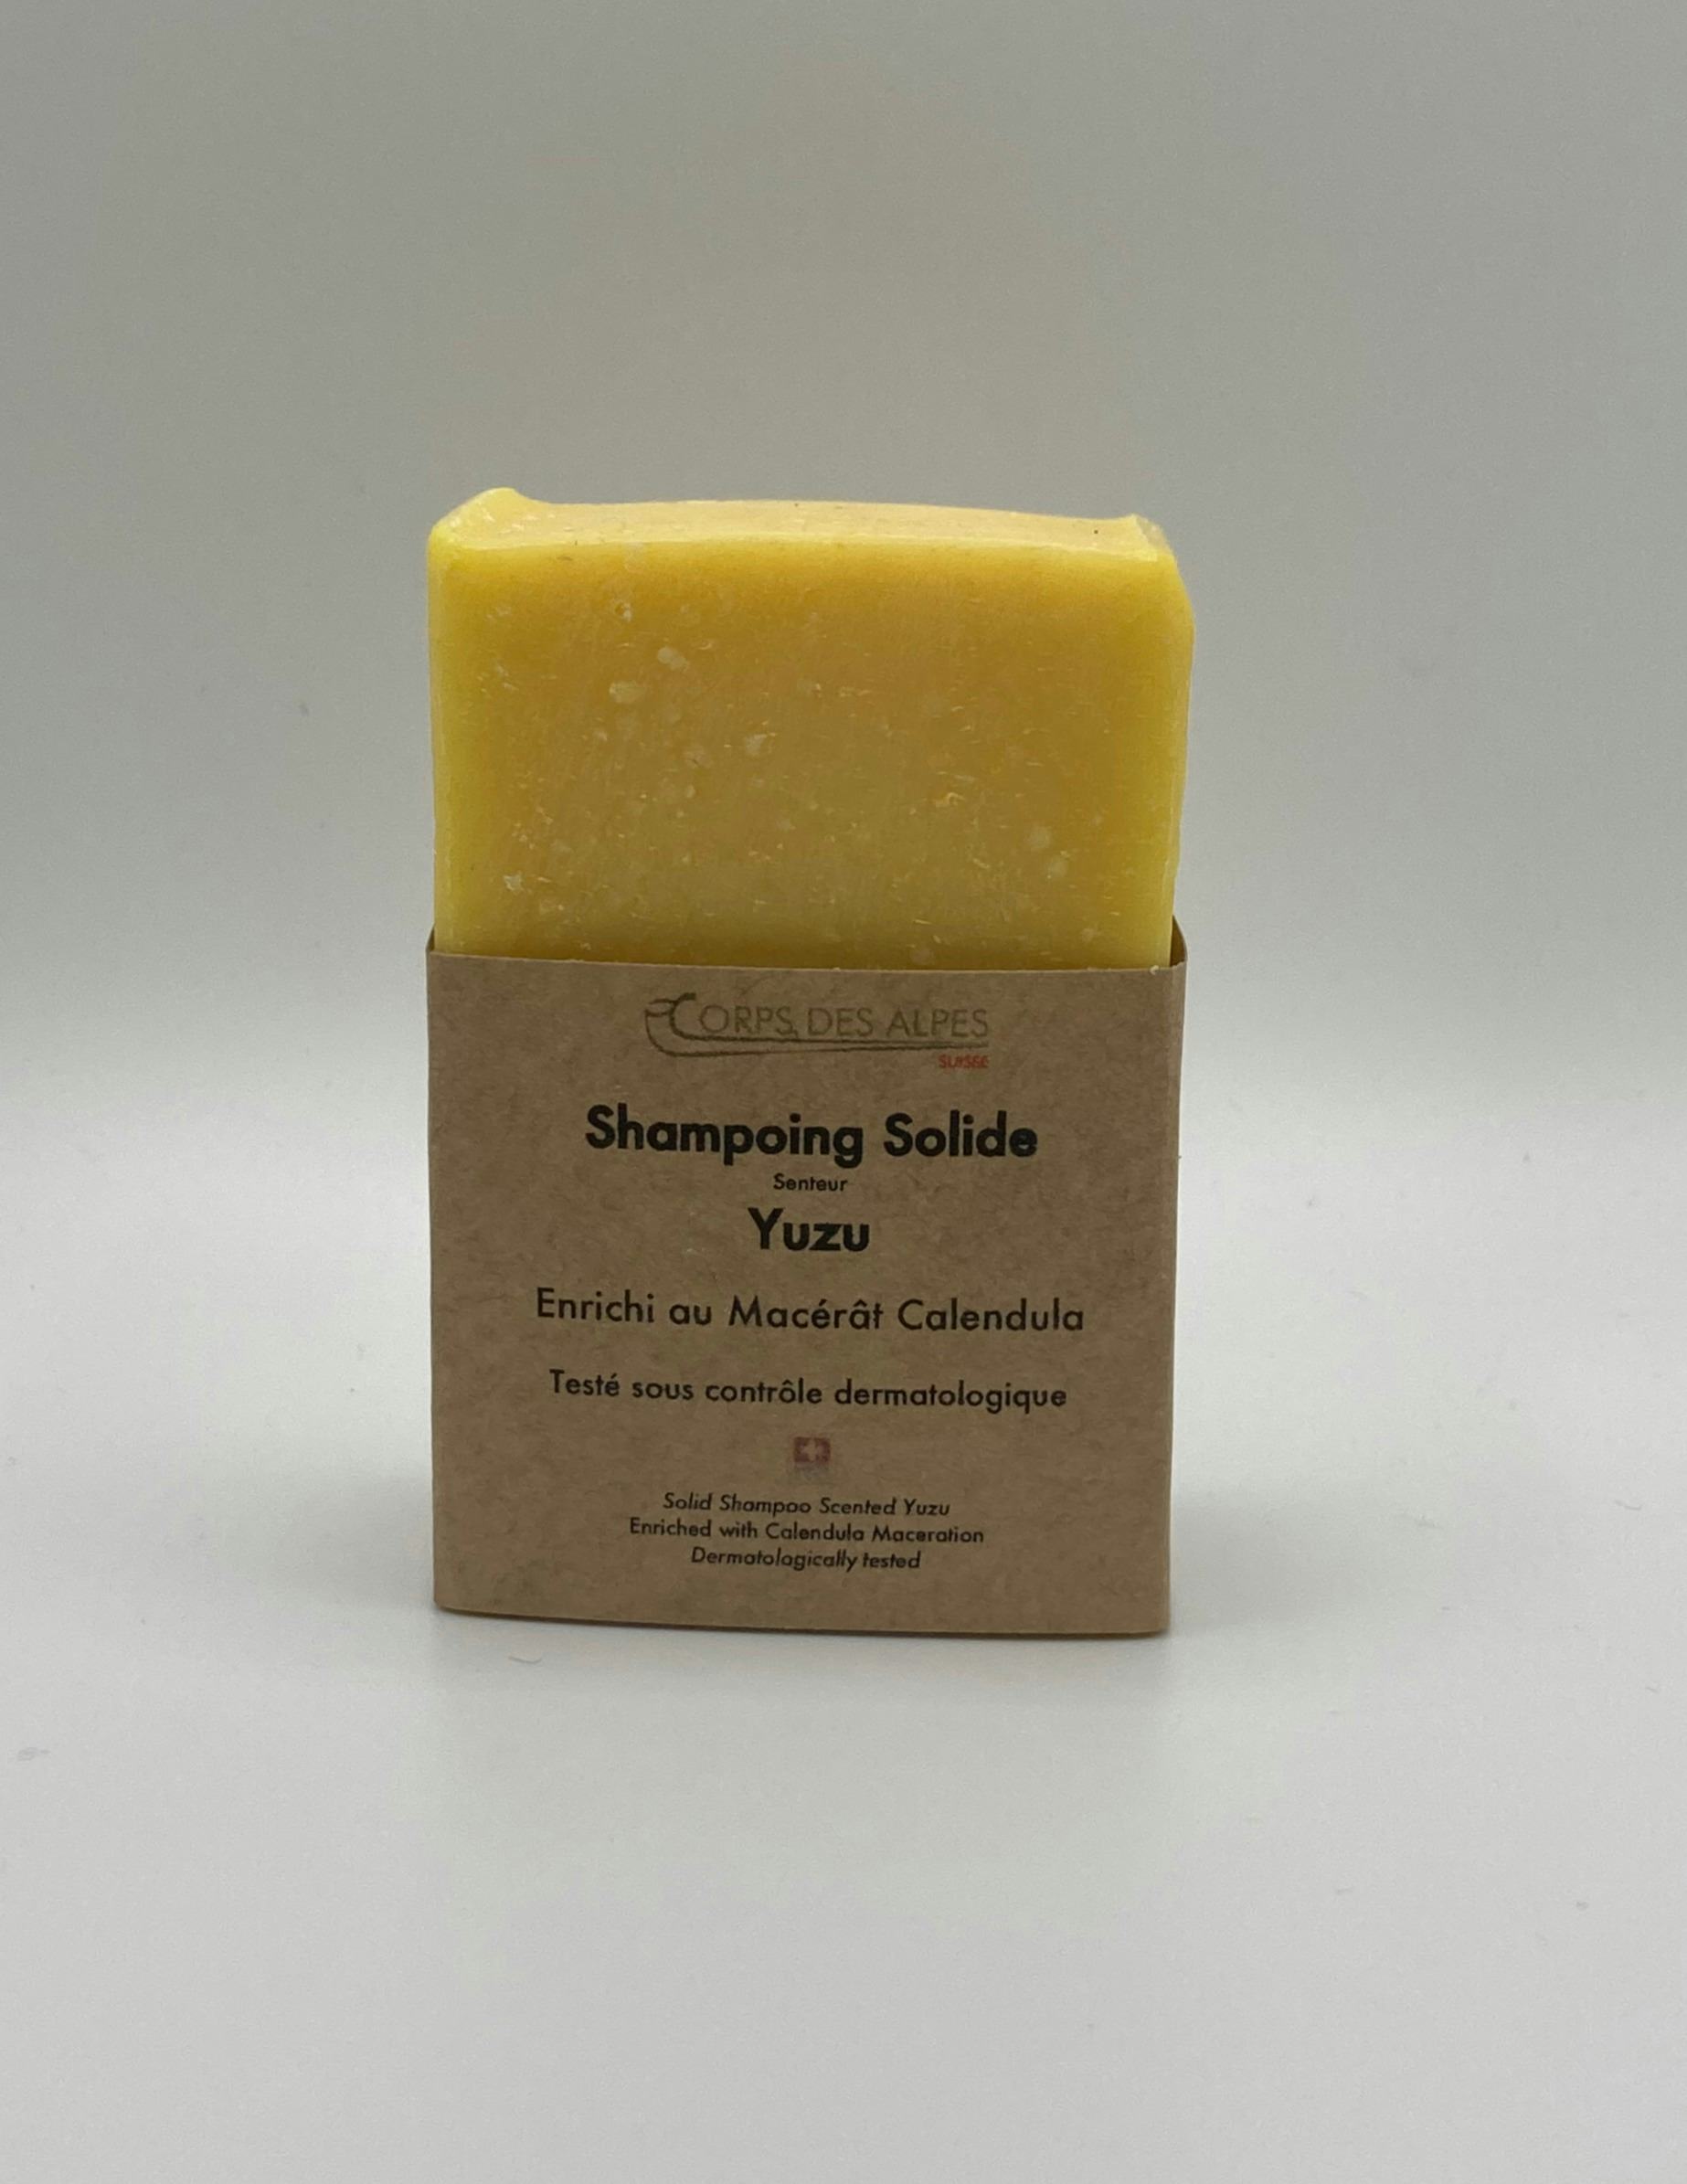 Shampoing solide senteur Yuzu, produit artisanal en vente directe en Suisse